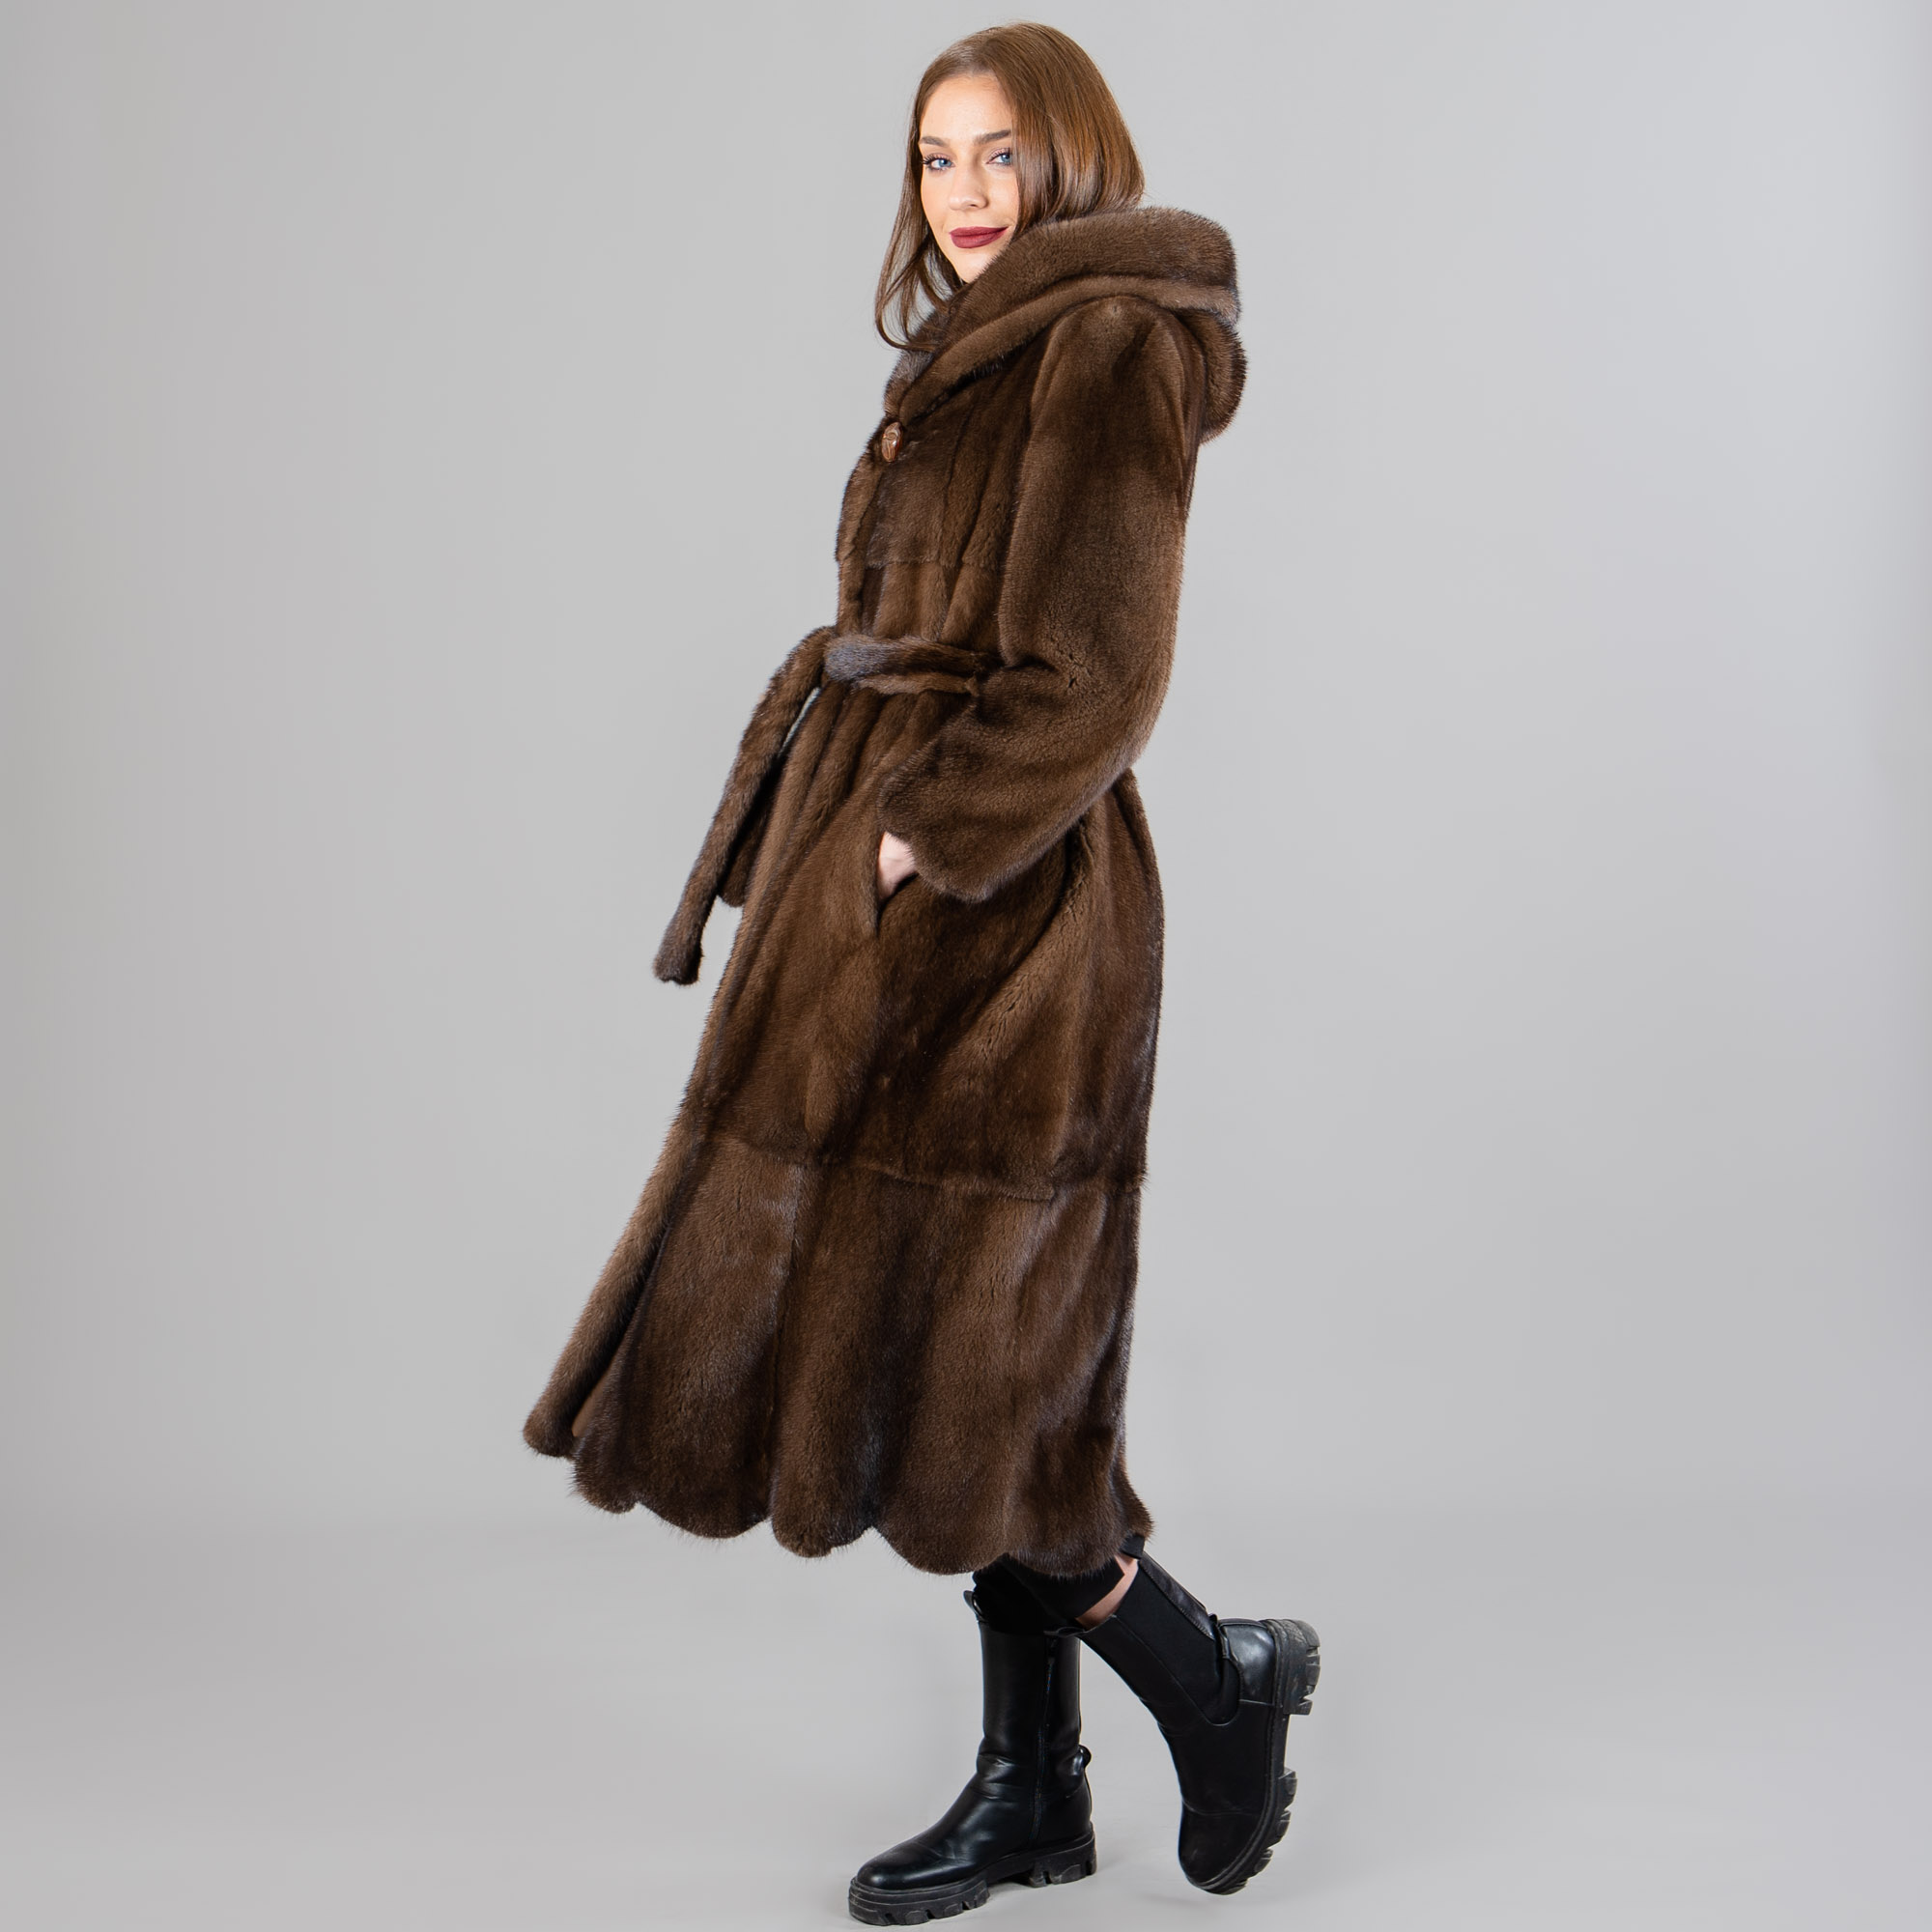 καφέ γούνινο βιζόν παλτό με κουκούλα